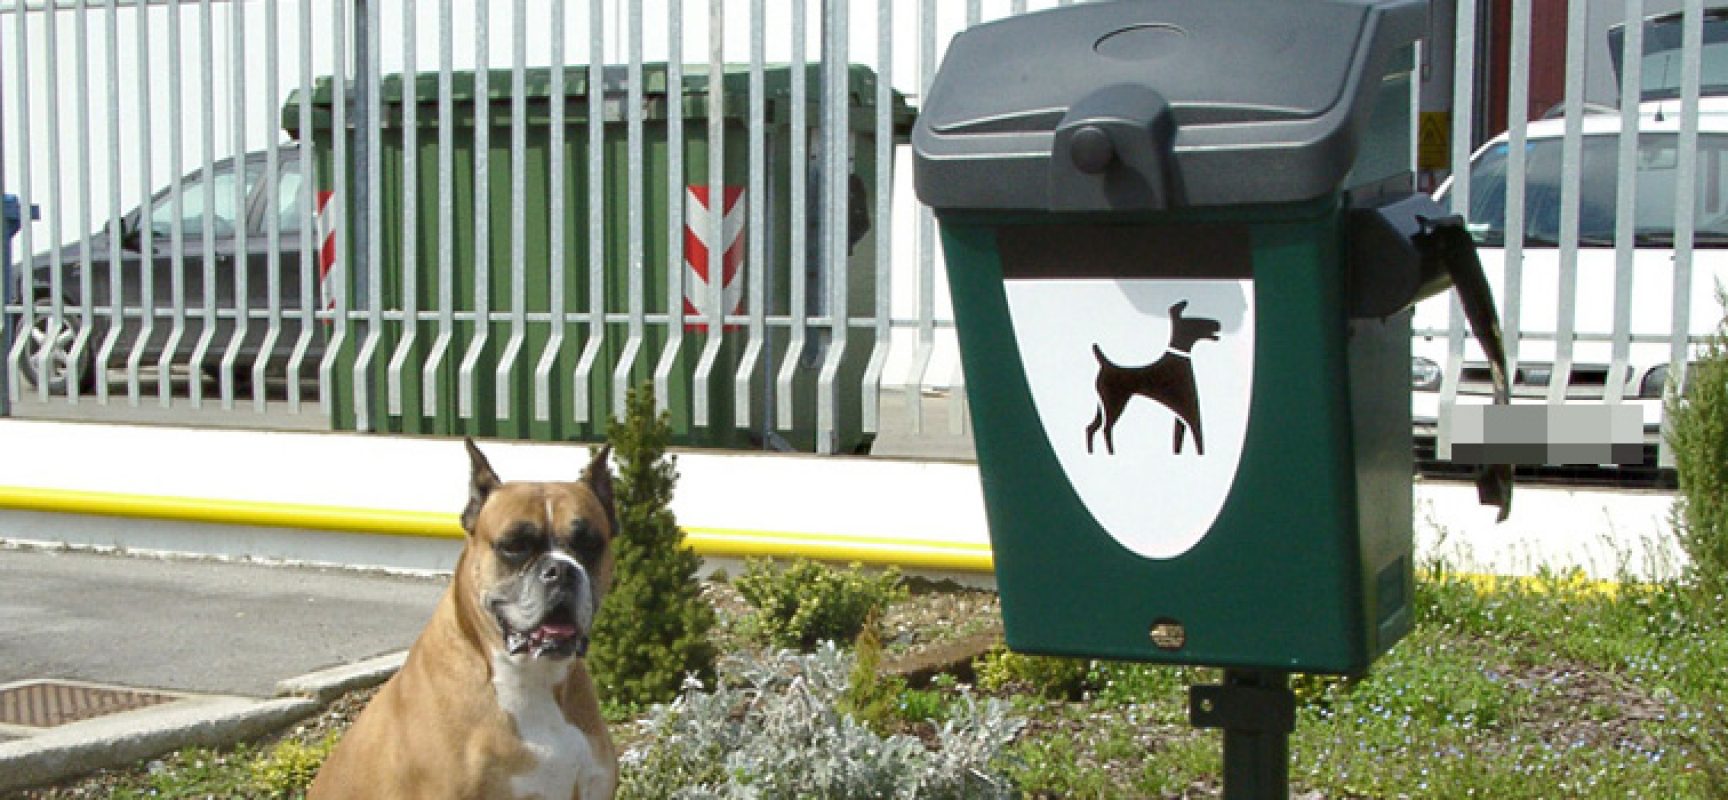 Cestini per deiezioni canine, ne saranno installati 20 in tutta la città